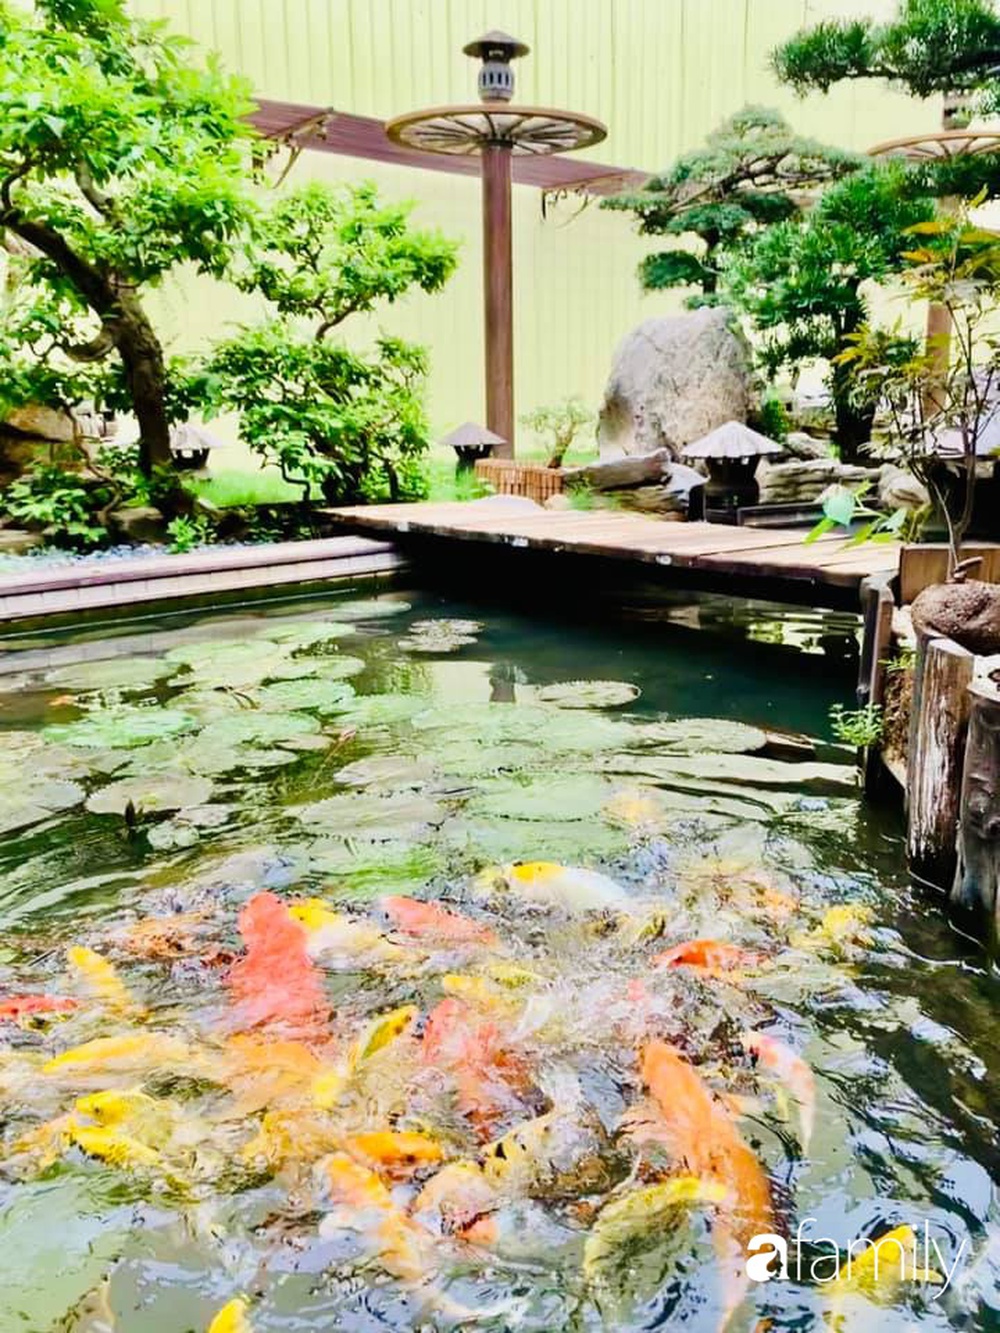 Chồng tự tay thiết kế nhà vườn kiểu Nhật tặng vợ để kỷ niệm 15 năm bên nhau với chi phí 290 triệu đồng ở Hà Nội - Ảnh 27.